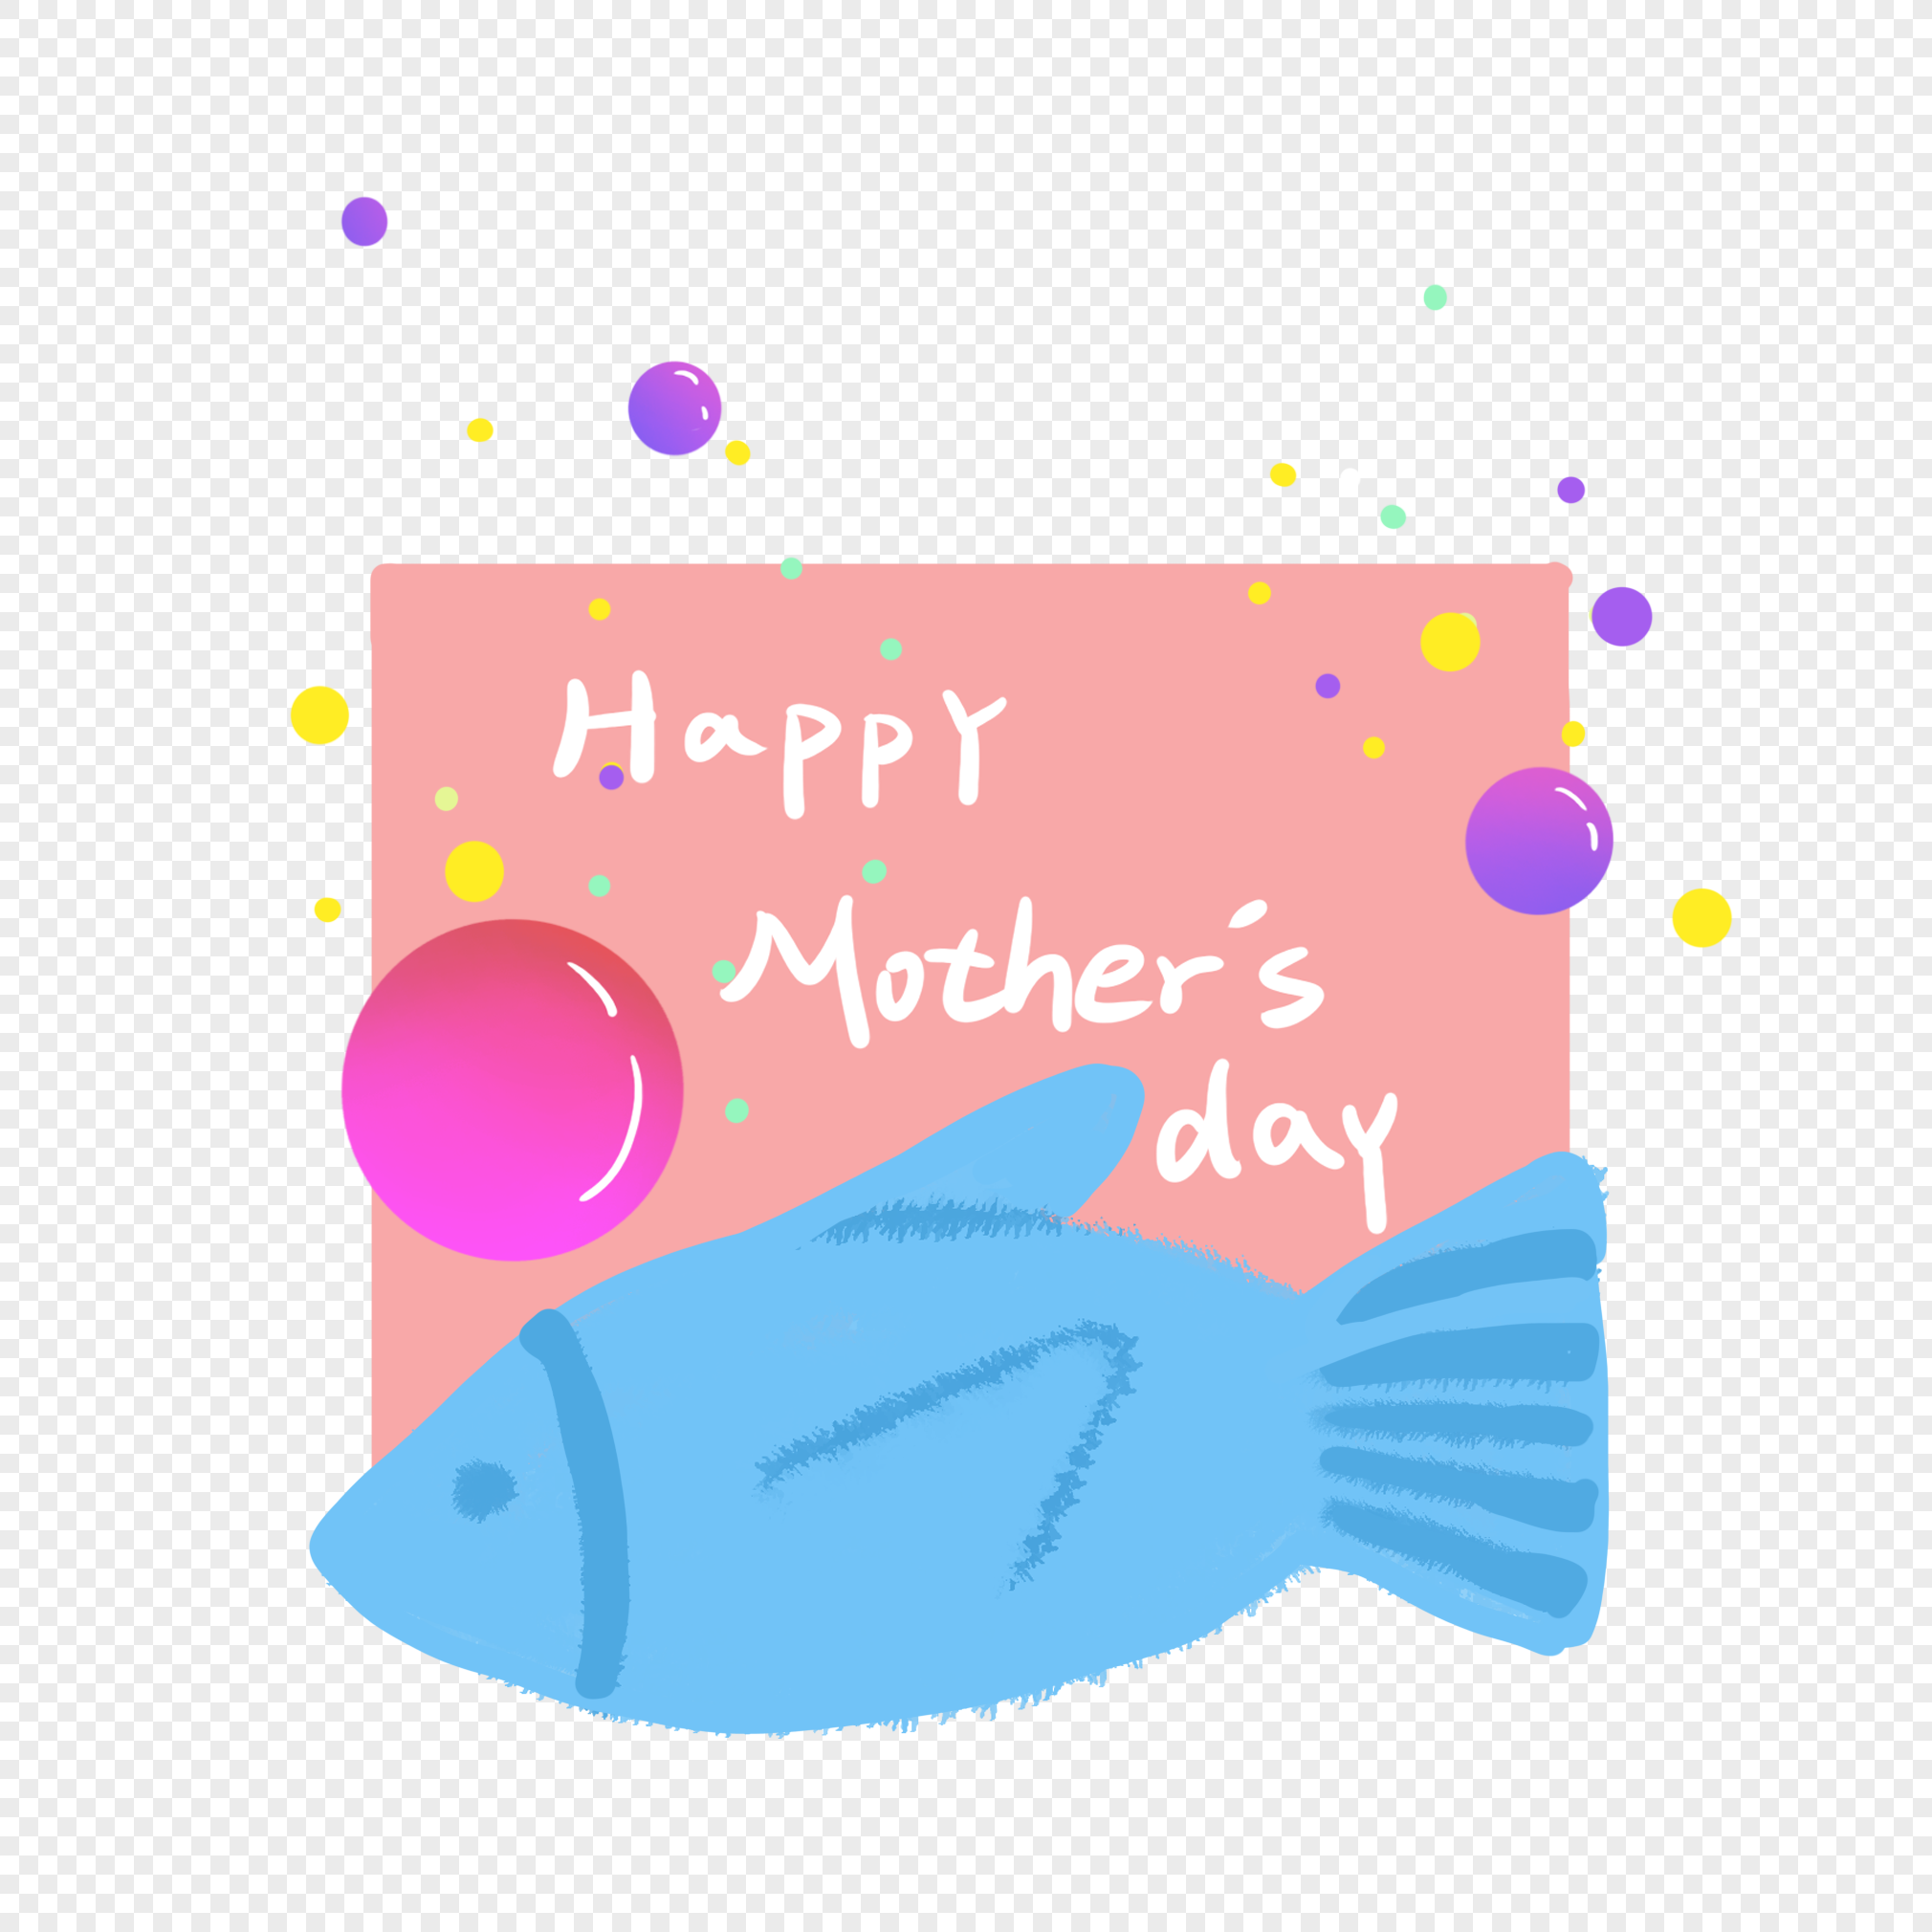 Mother fish. Слоган про рыбу. С днём матери с рыбкой.